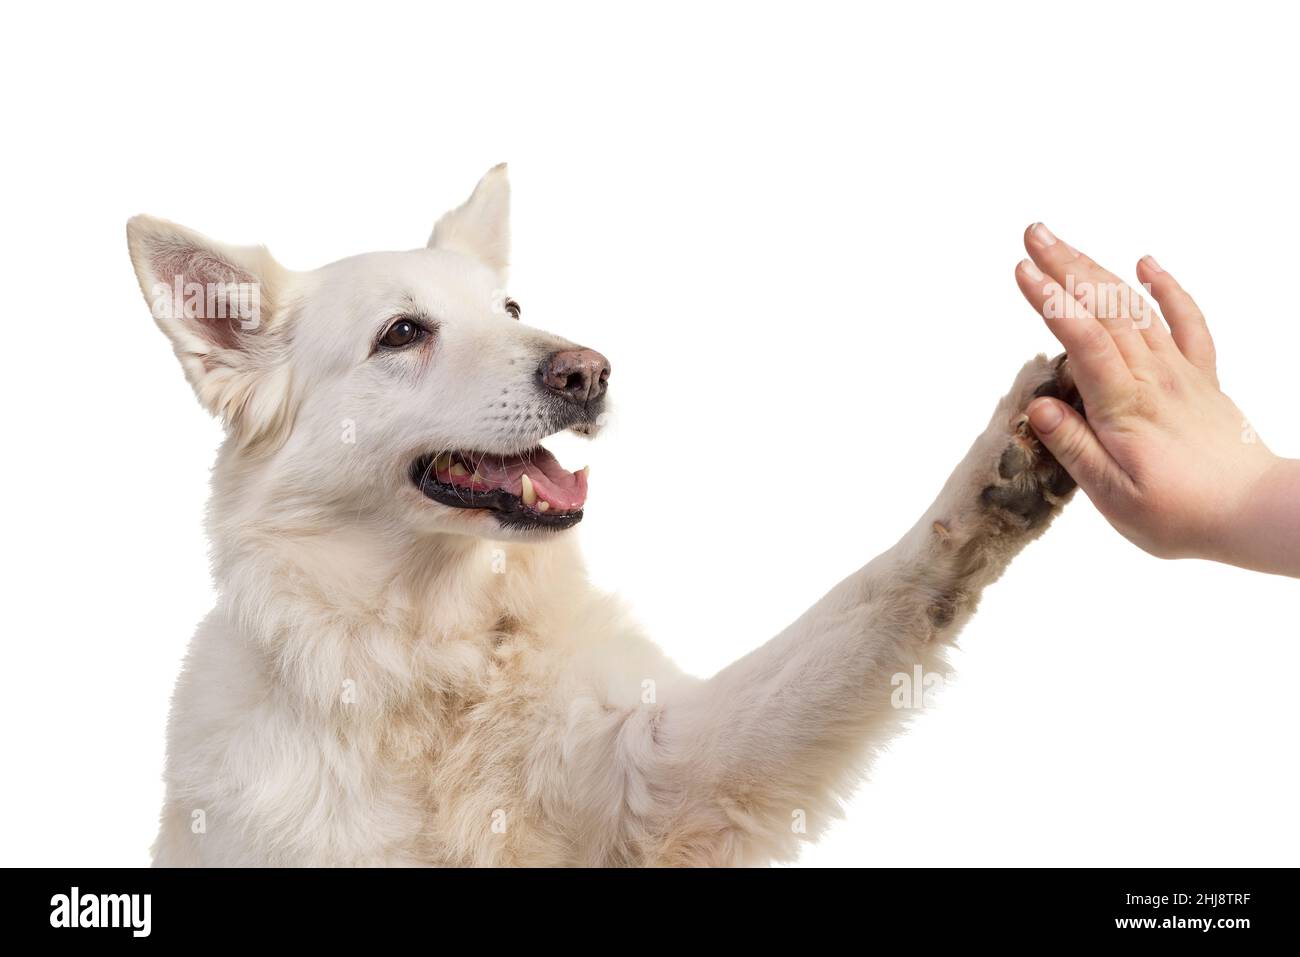 Portrait de chien berger blanc suisse face caméra isolé sur un fond blanc donnant une forte 5 Banque D'Images